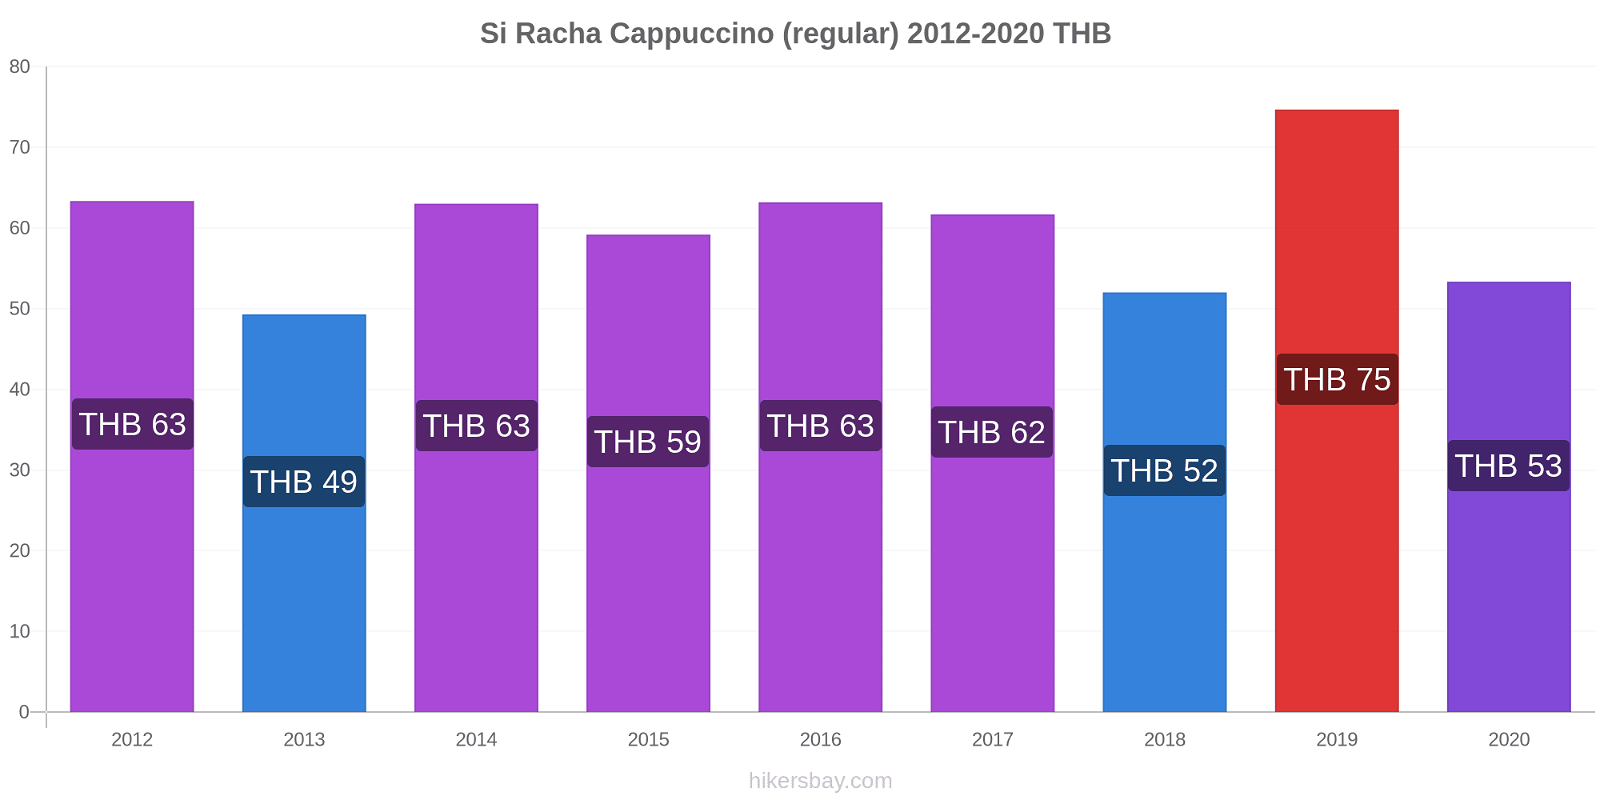 Si Racha price changes Cappuccino (regular) hikersbay.com